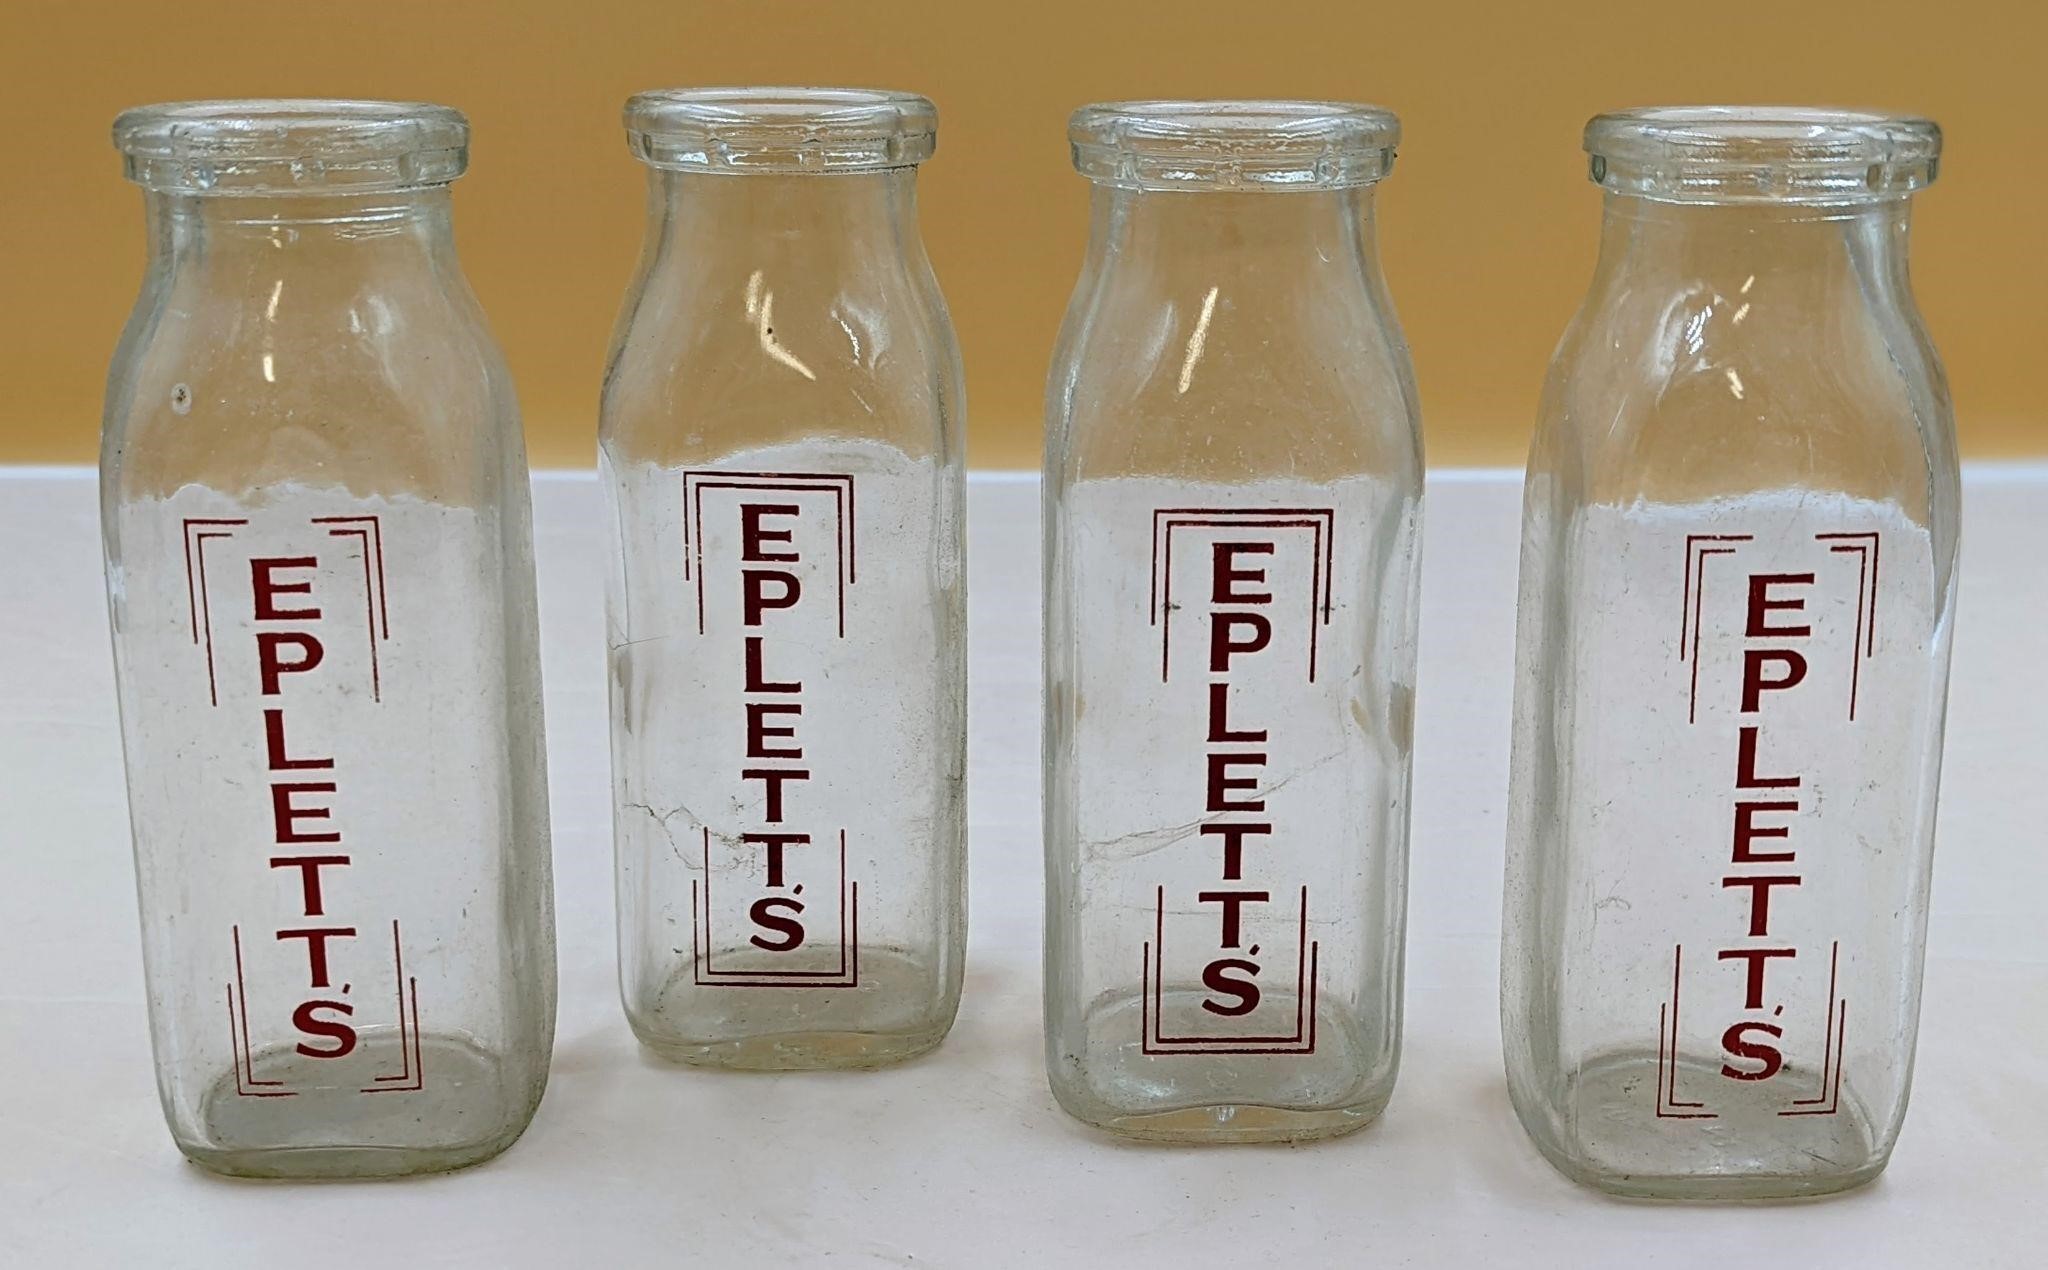 Set of 4 Eplett's Dairy Bottles